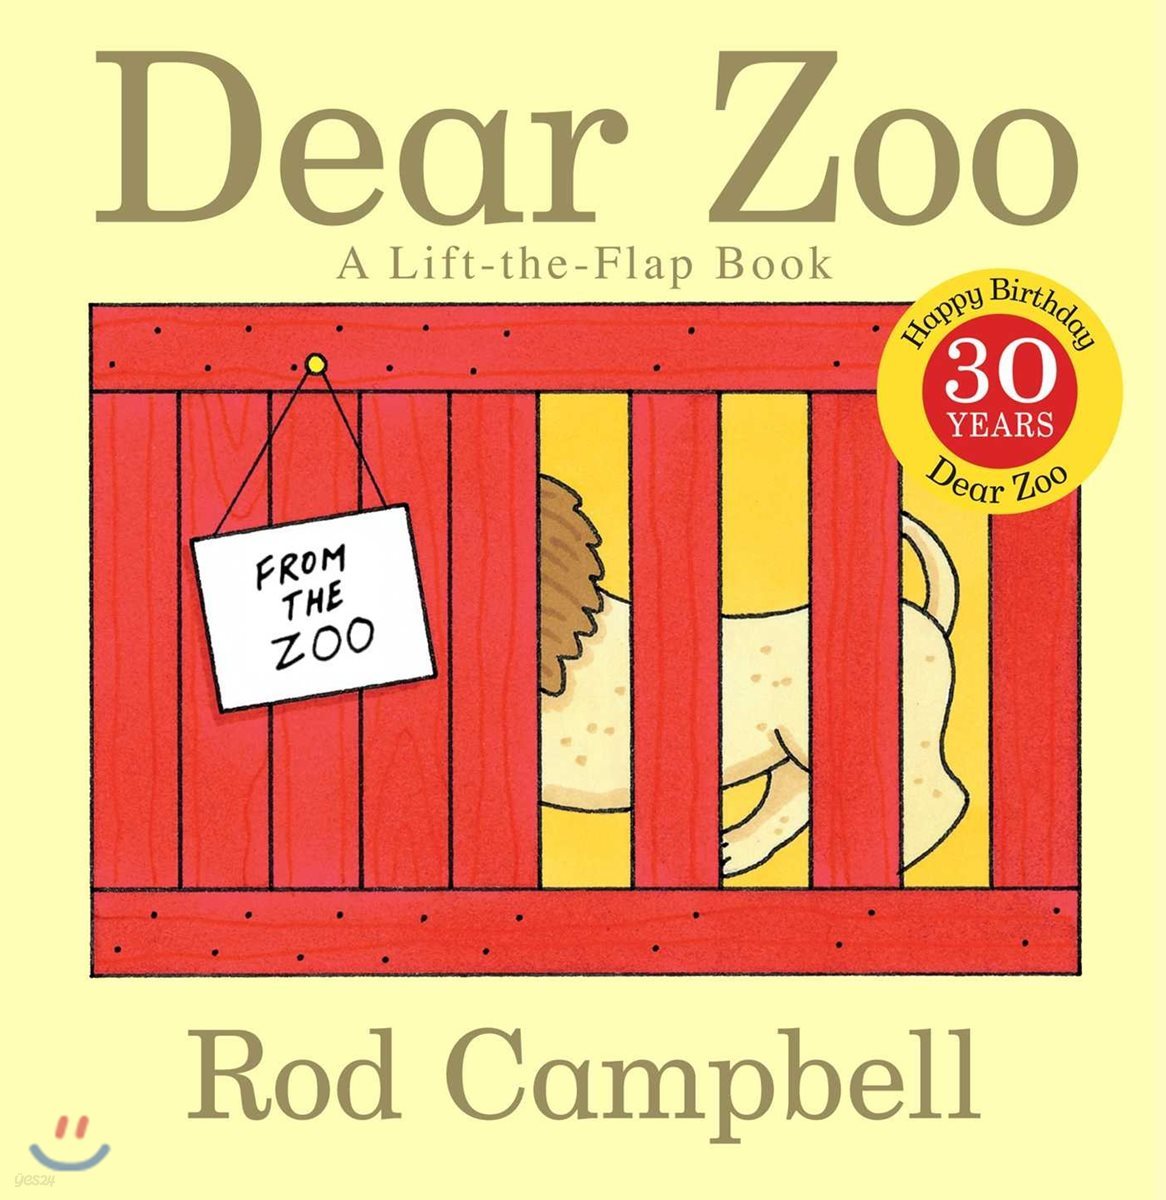 Dear Zoo: A Lift-The-Flap Book